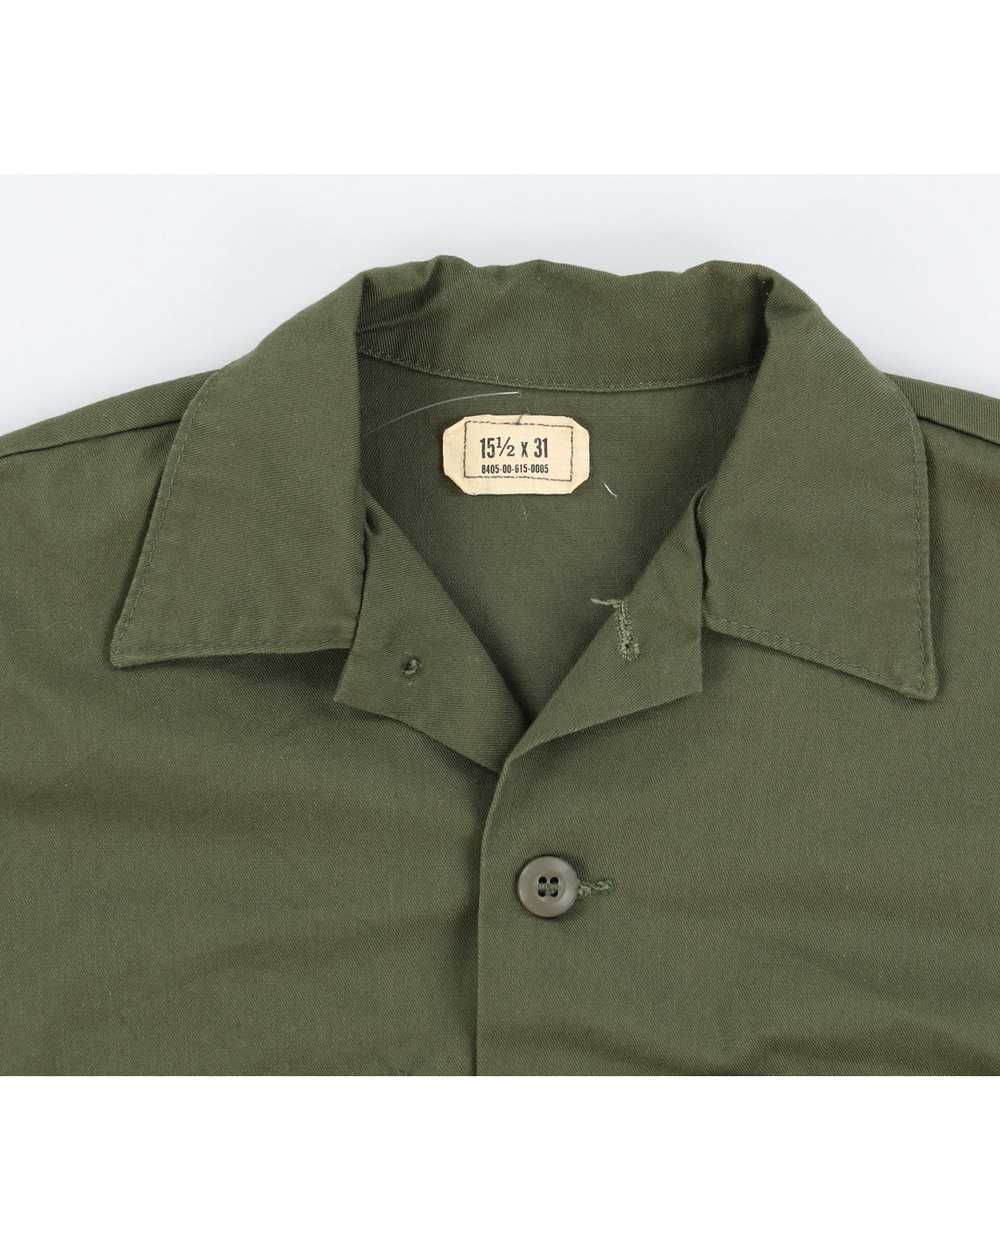 70s Vintage US Army OG-507 Shirt - M - image 3